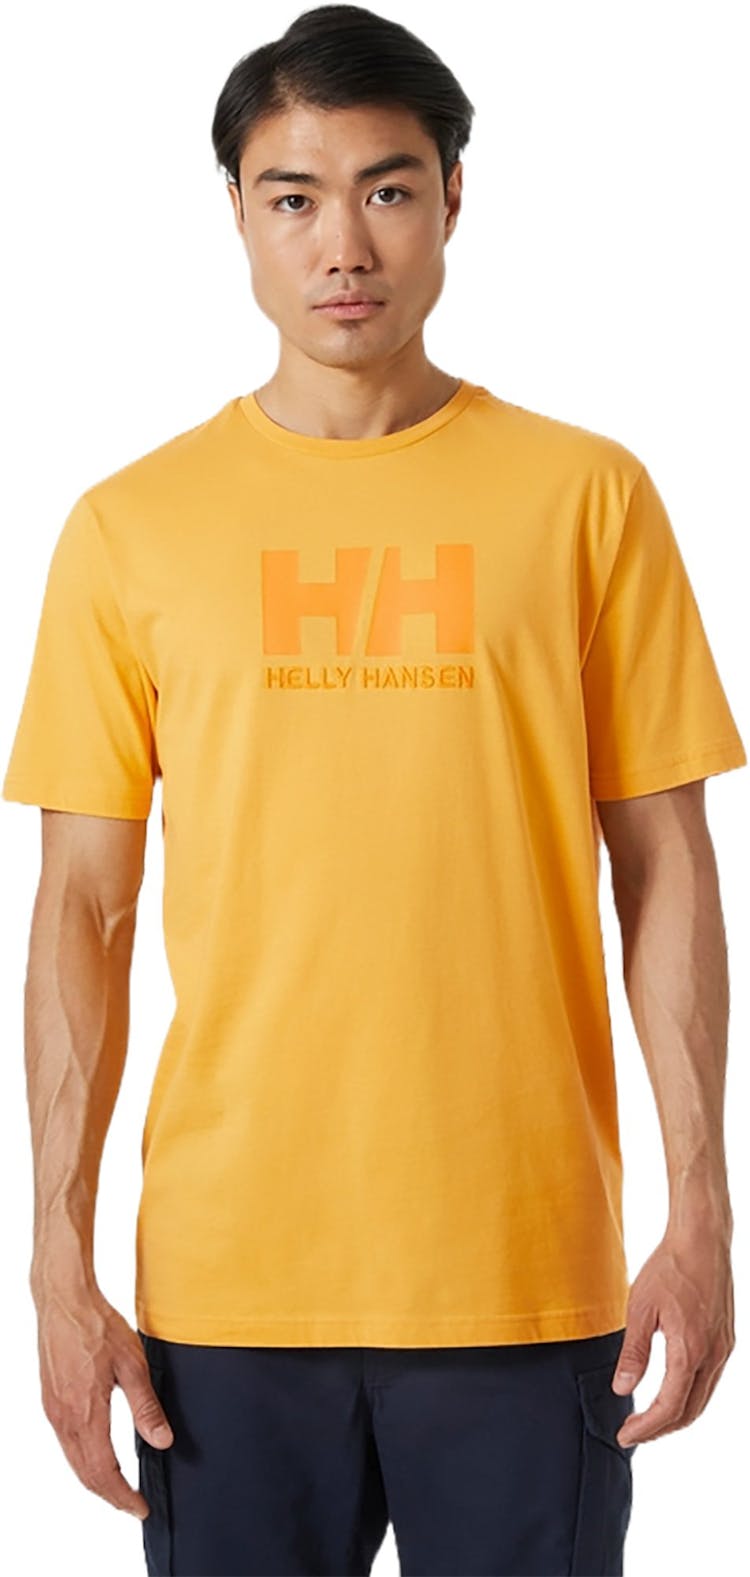 Numéro de l'image de la galerie de produits 6 pour le produit T-shirt HH Logo - Homme